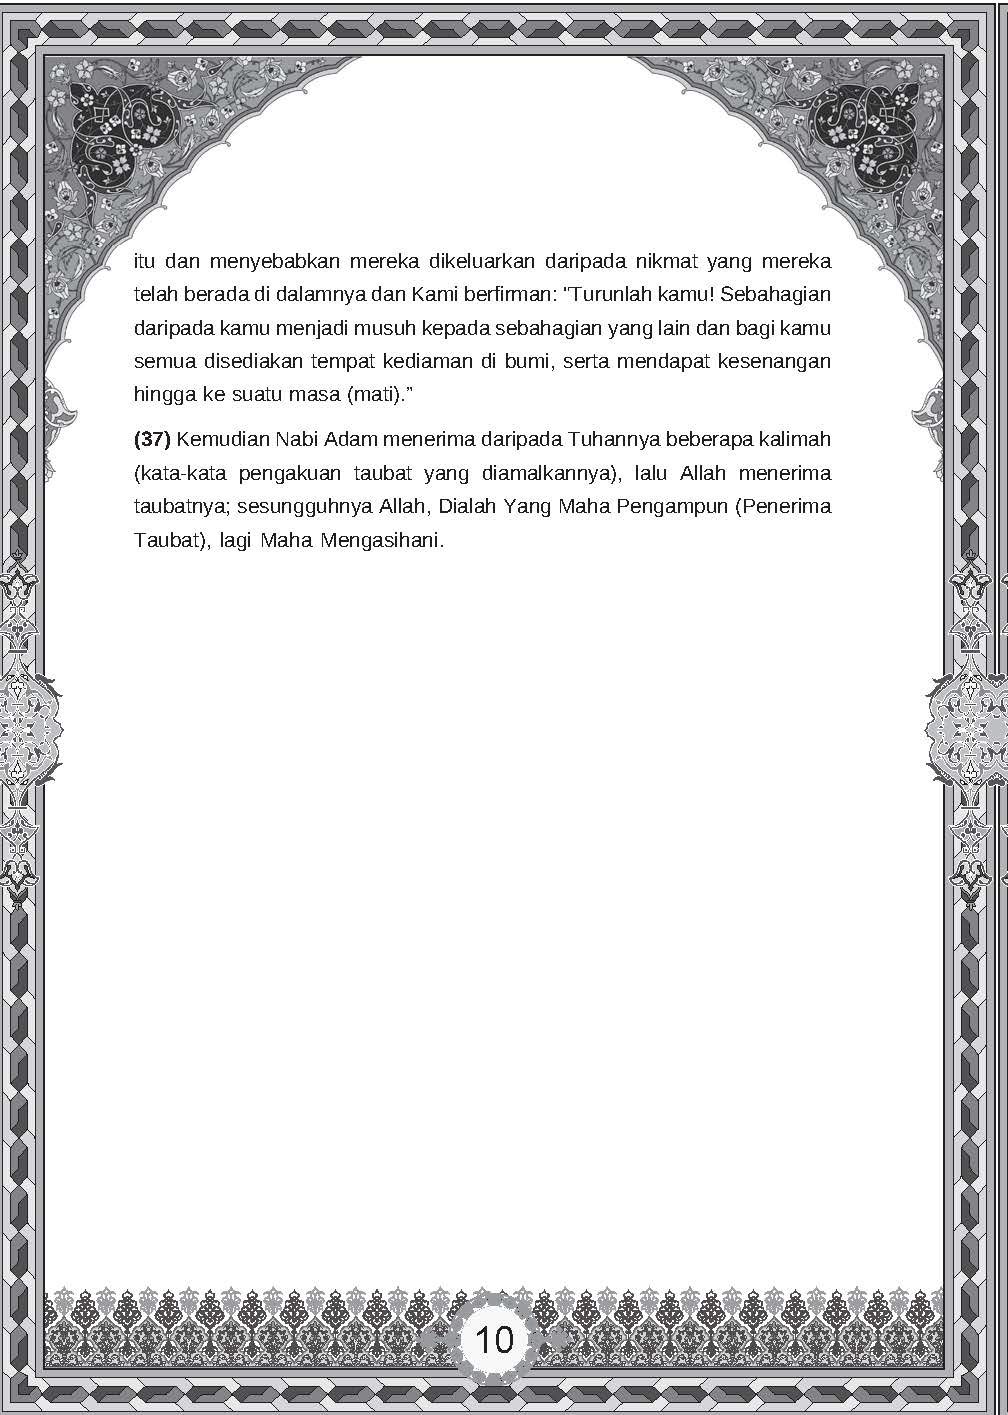 Pendidikan Islam - Ayat Bacaan, Hafazan & Hadis Tingkatan 1,2 & 3 (Nota Poket) - (TBBS1095)